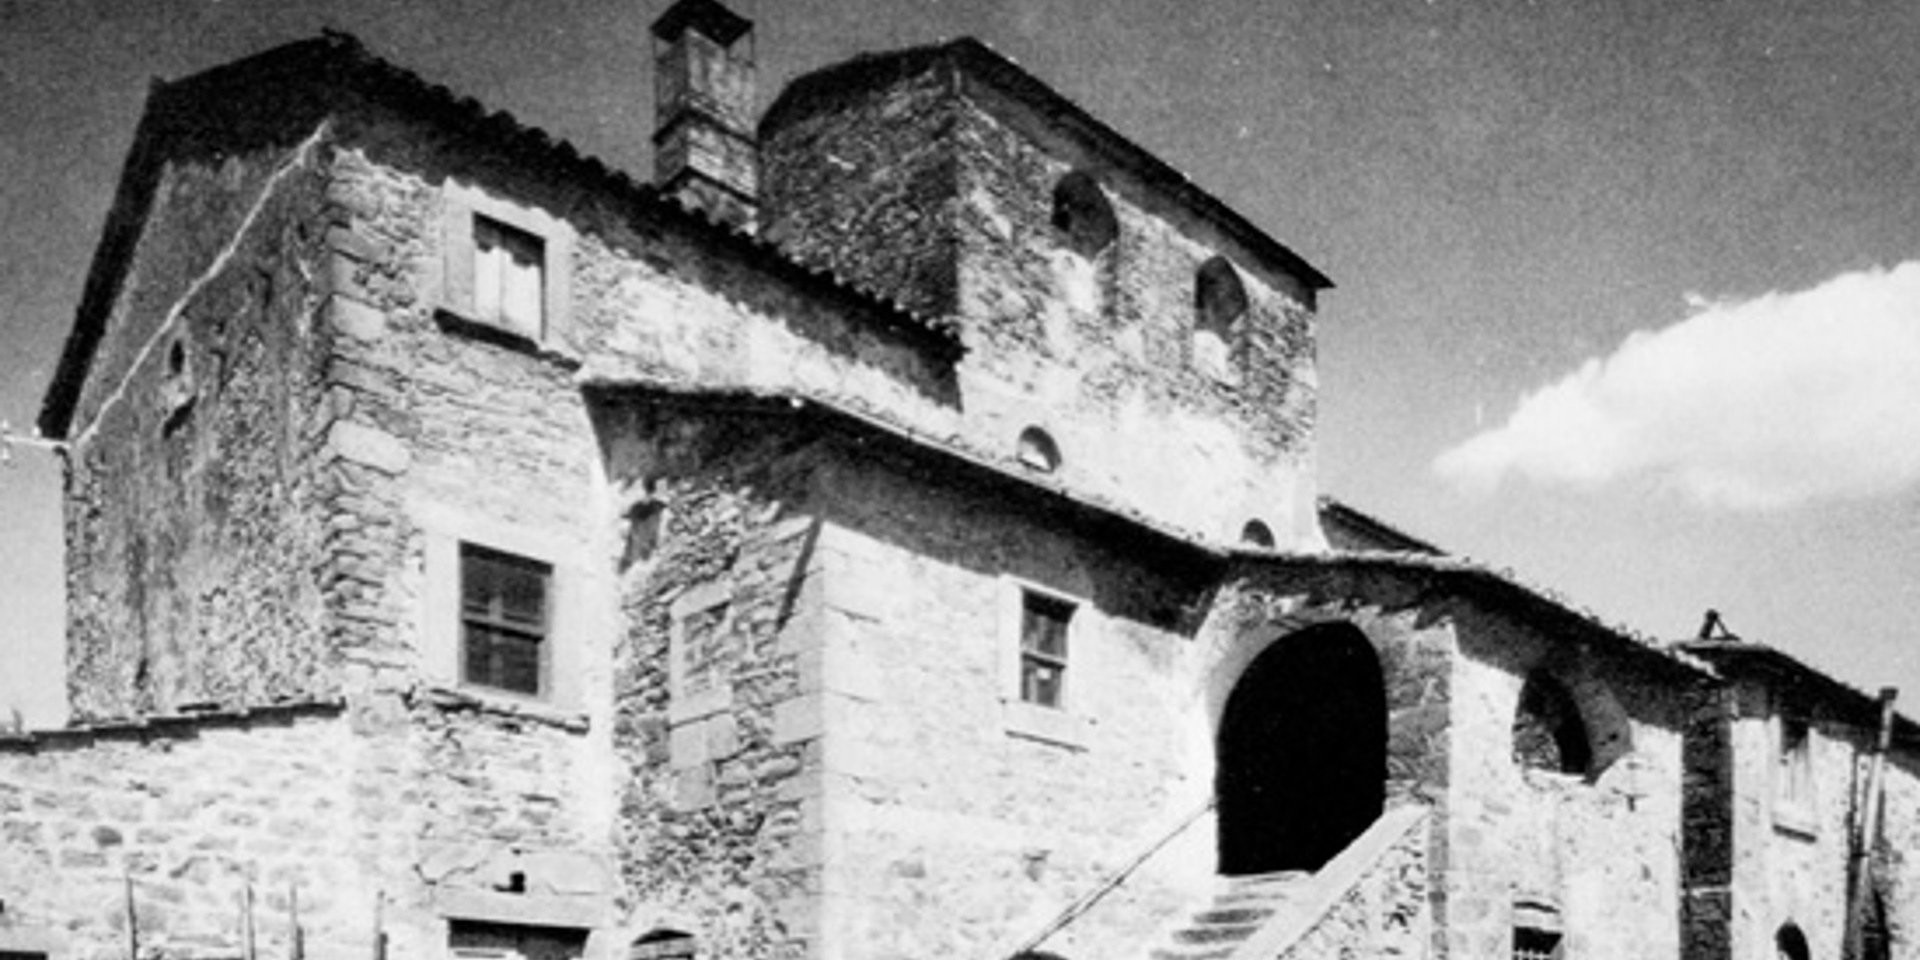 Foto in bianco e nero: particolare dell’antico Monastero
					San Silvestro